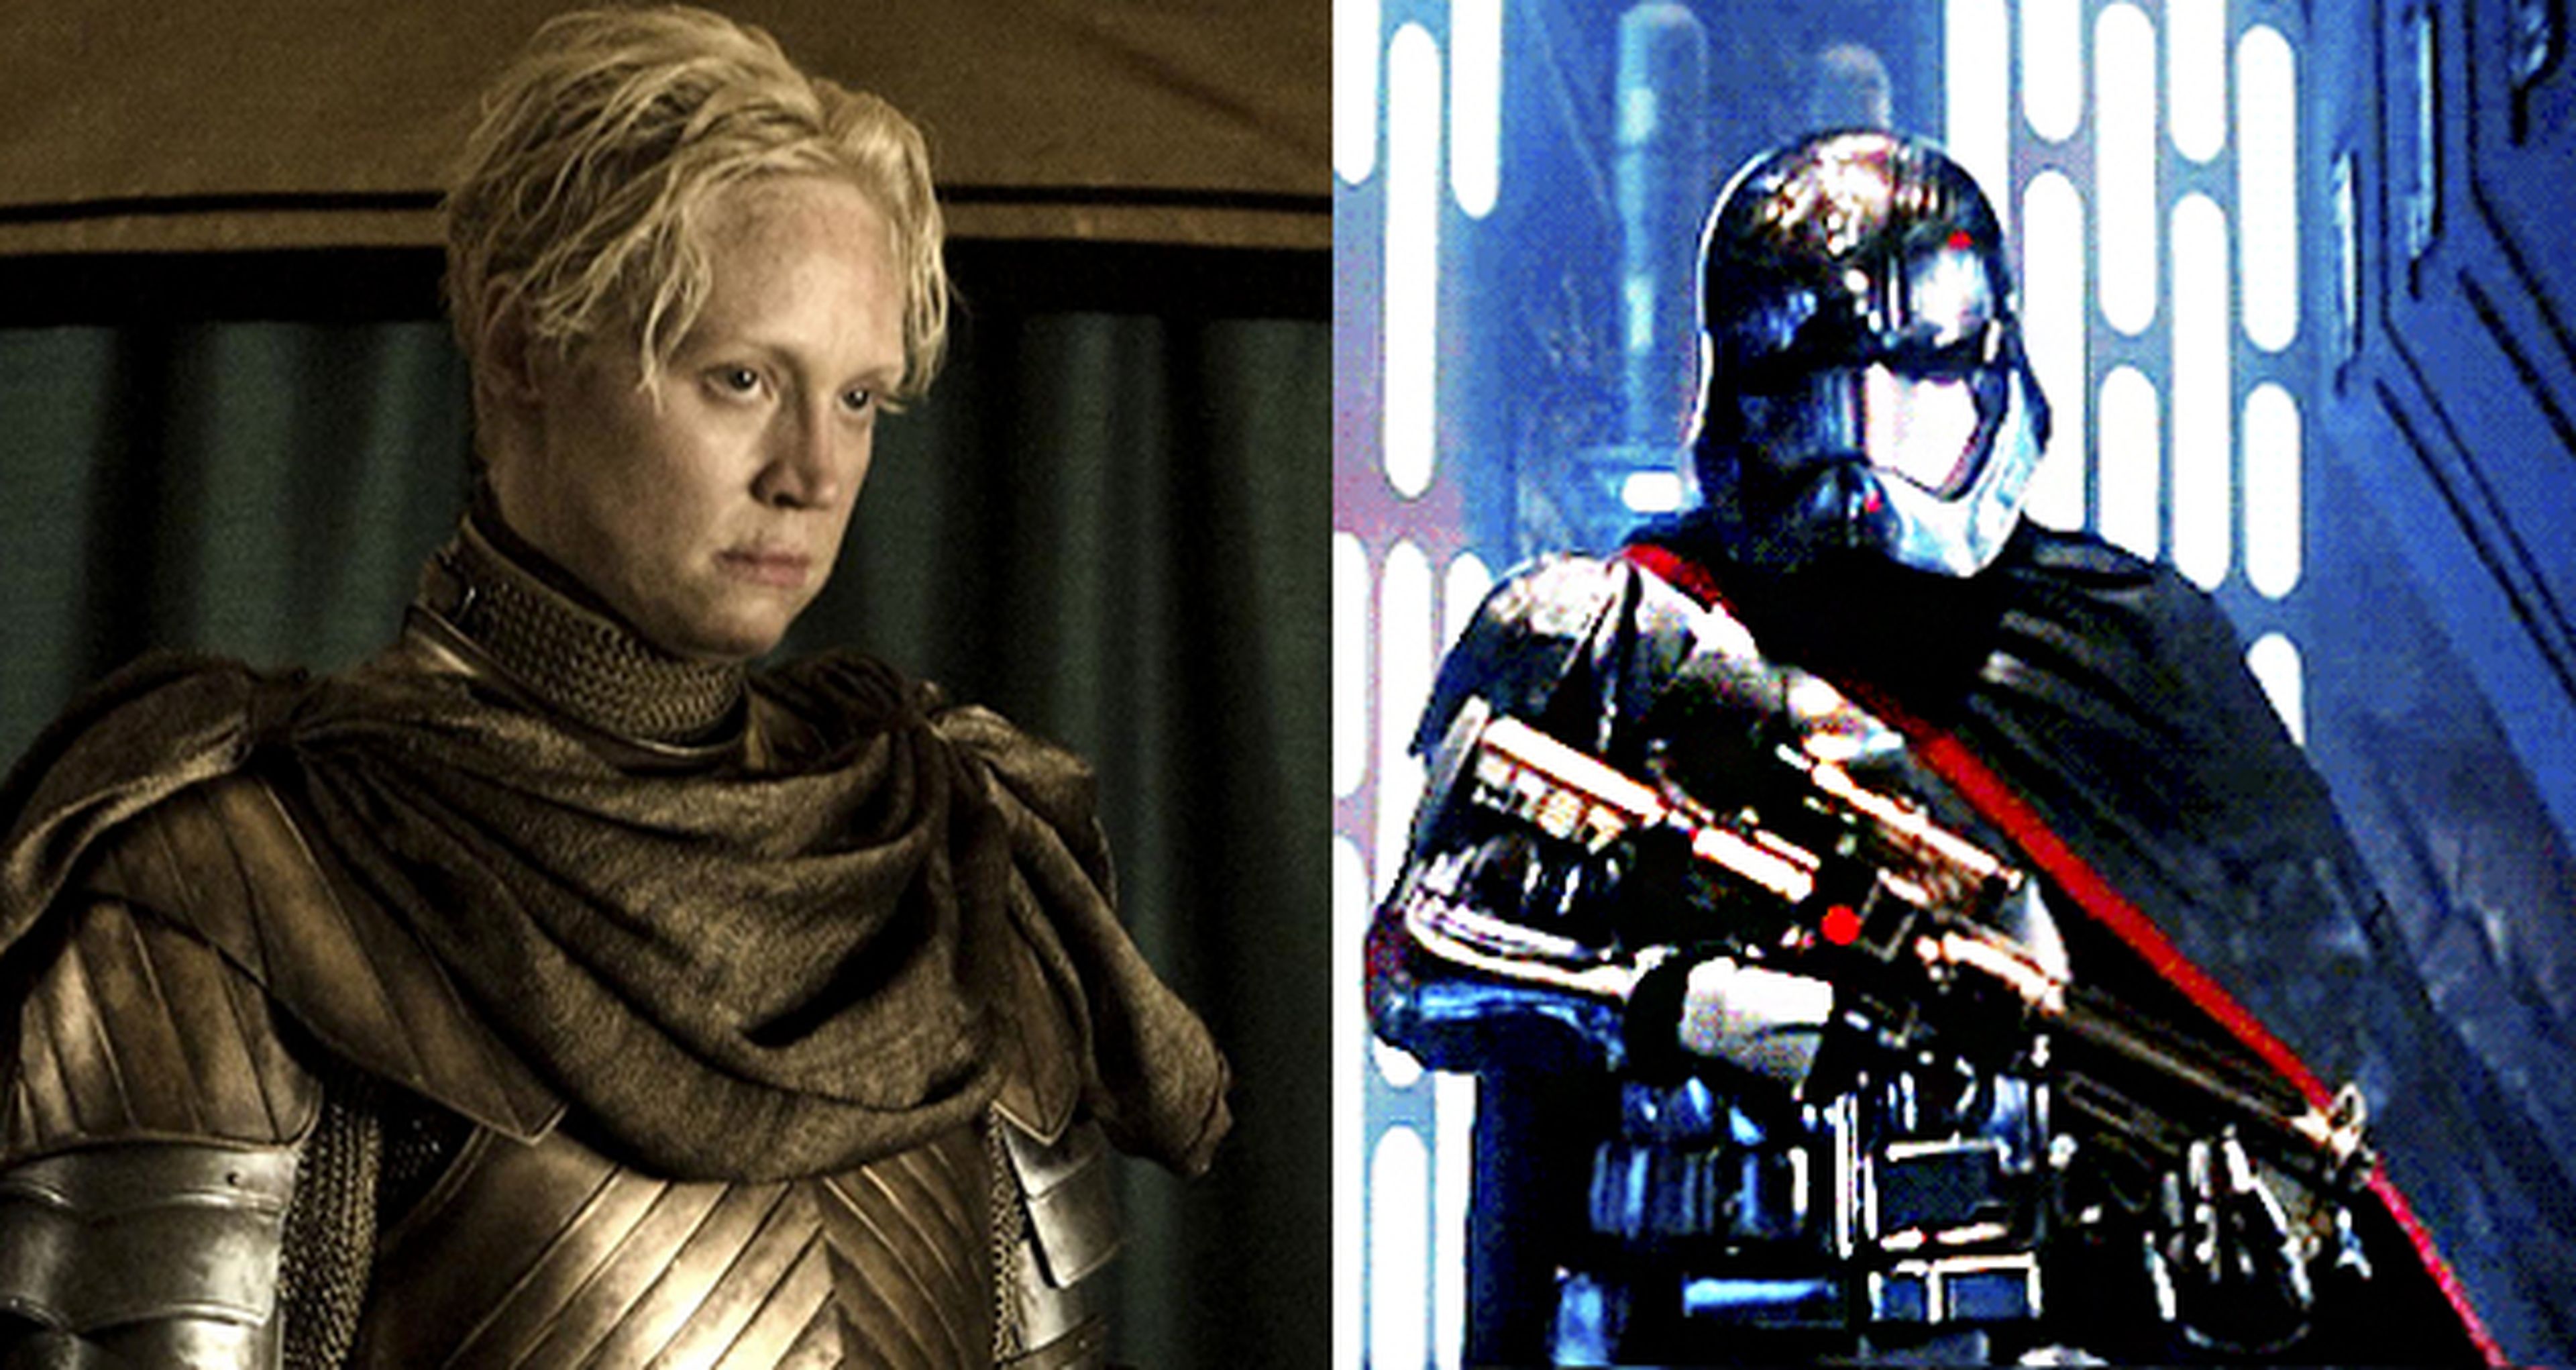 Star Wars VII: similitudes entre Brienne de Tarth y Capitán Phasma